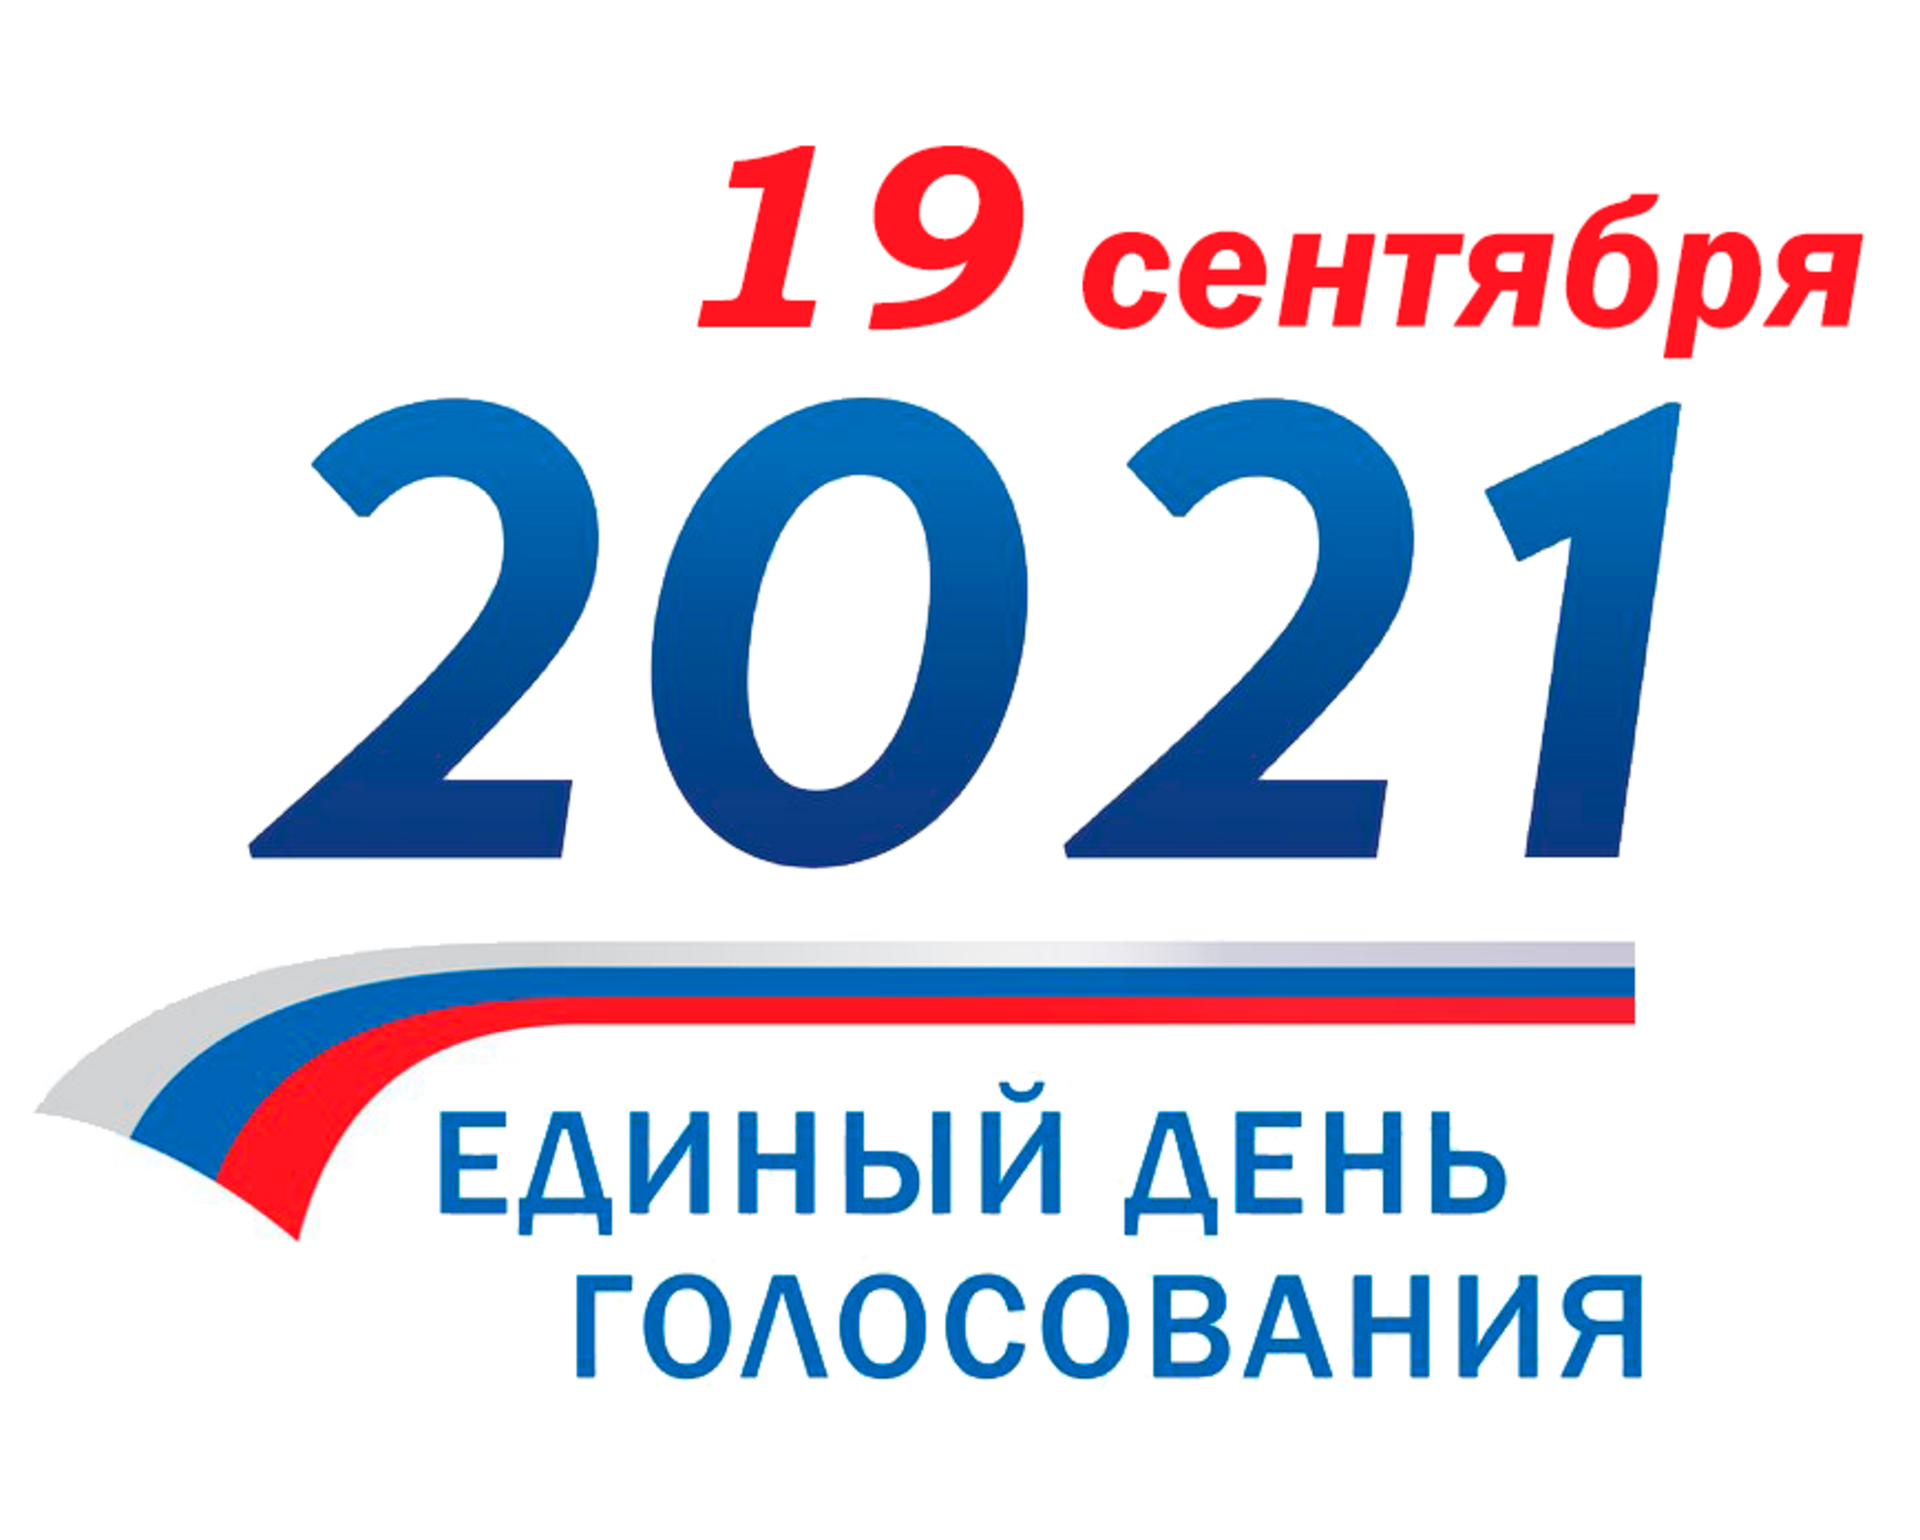 Выборы в государственную думу рф проходят. Выборы 2021. Выборы 19 сентября 2021 года. 19 Сентября 2021 единый день голосования. Выборы 2021 в России.